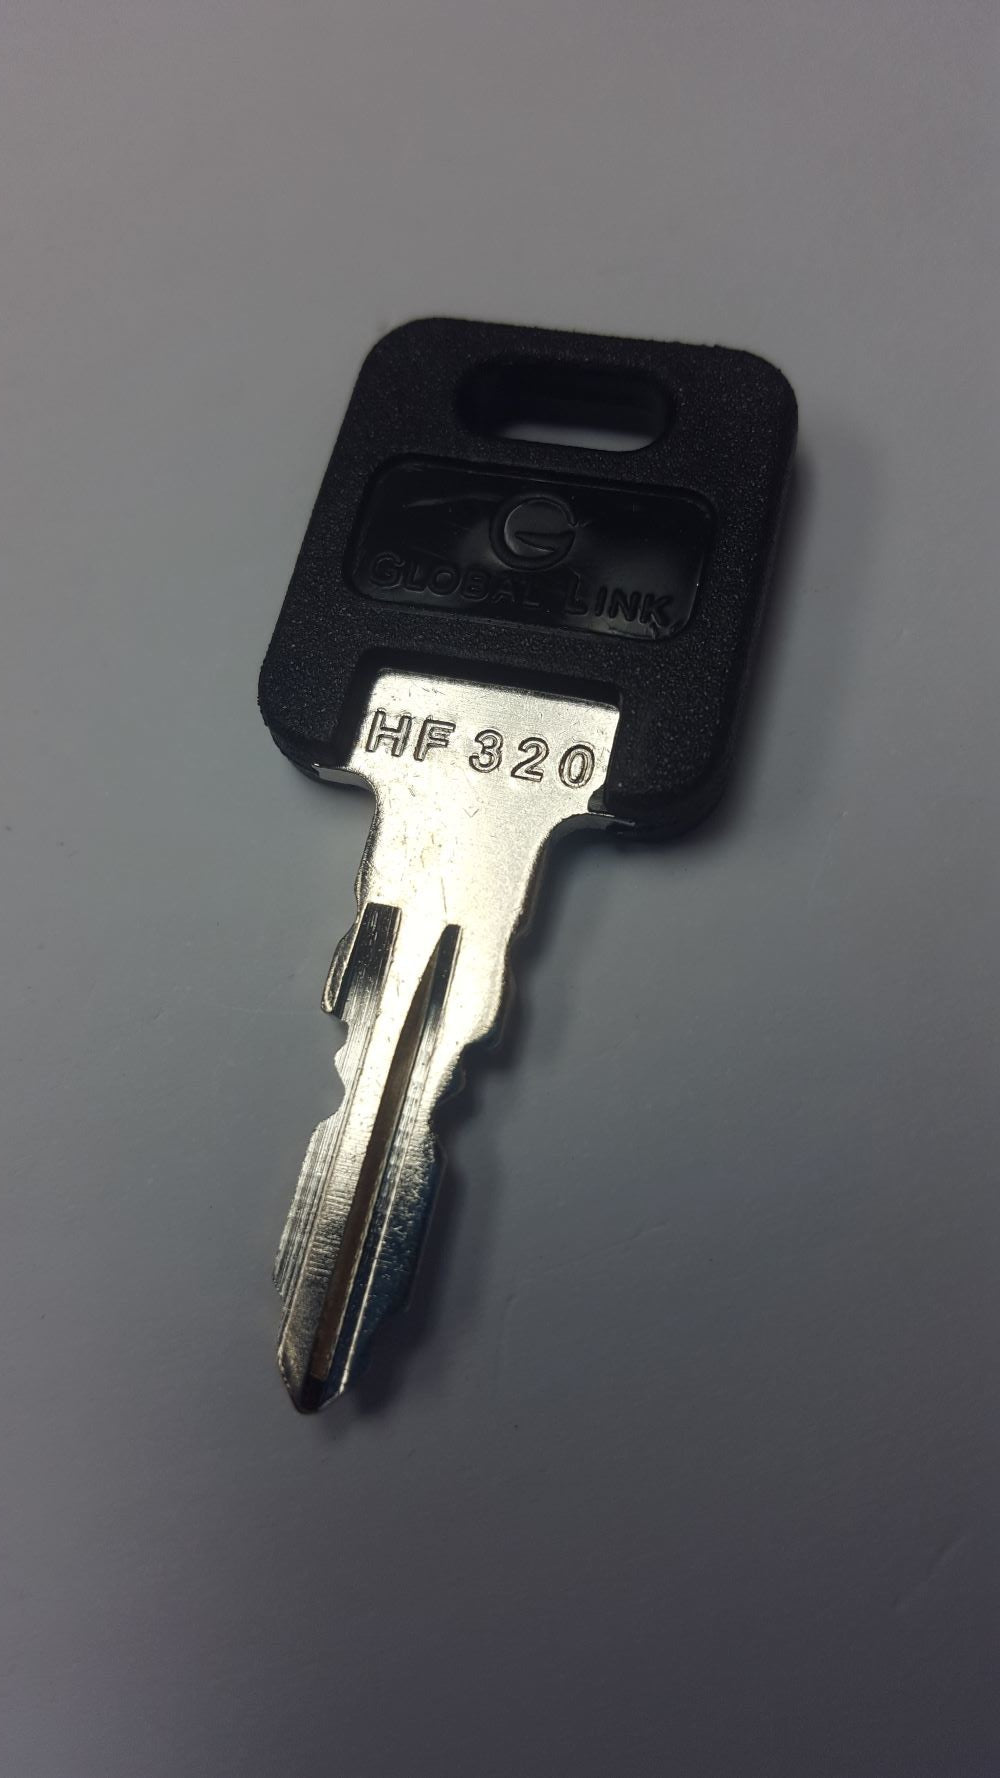 CPG KEY-HF-320 Pre-cut Stamped FIC Replacemnt HF320 Key